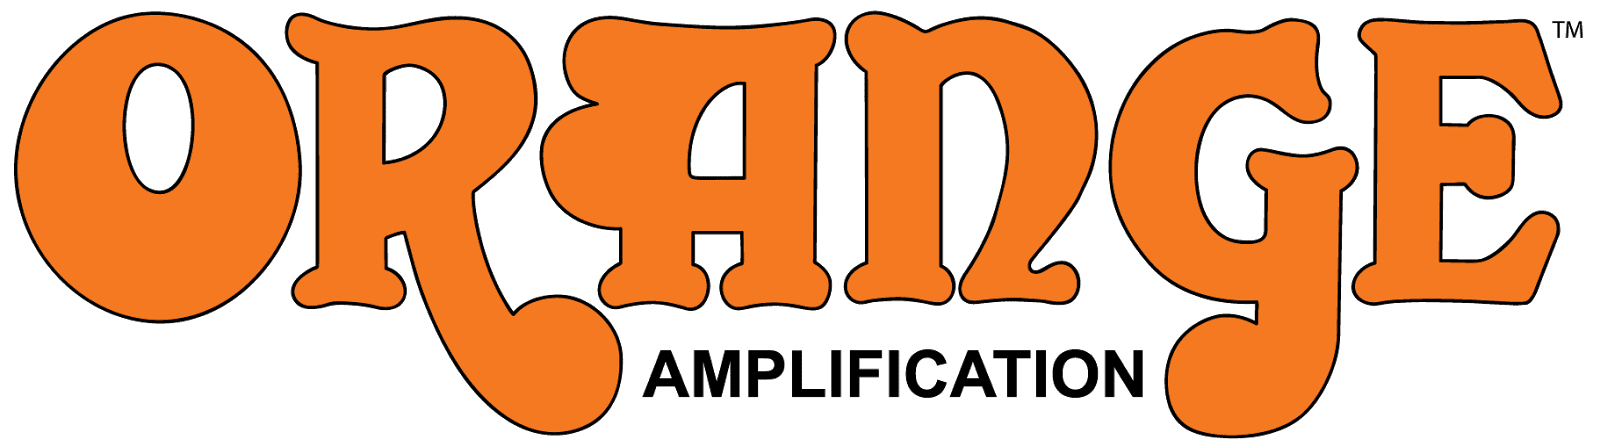 Hersteller-Report: Orange Amps - AMAZONA.de